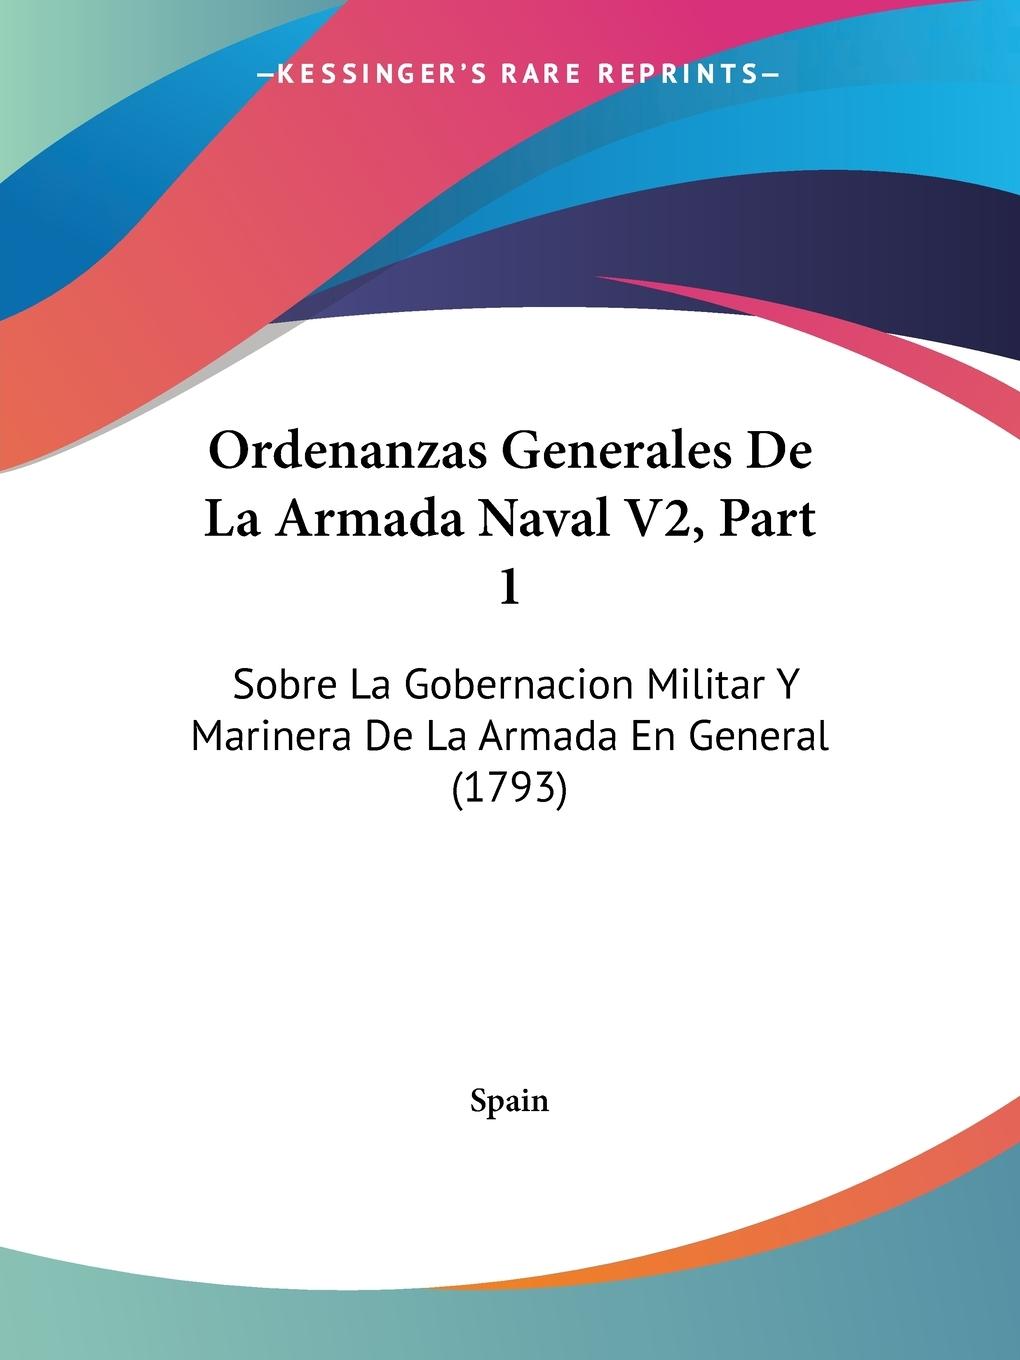 Ordenanzas Generales De La Armada Naval V2, Part 1 - Spain